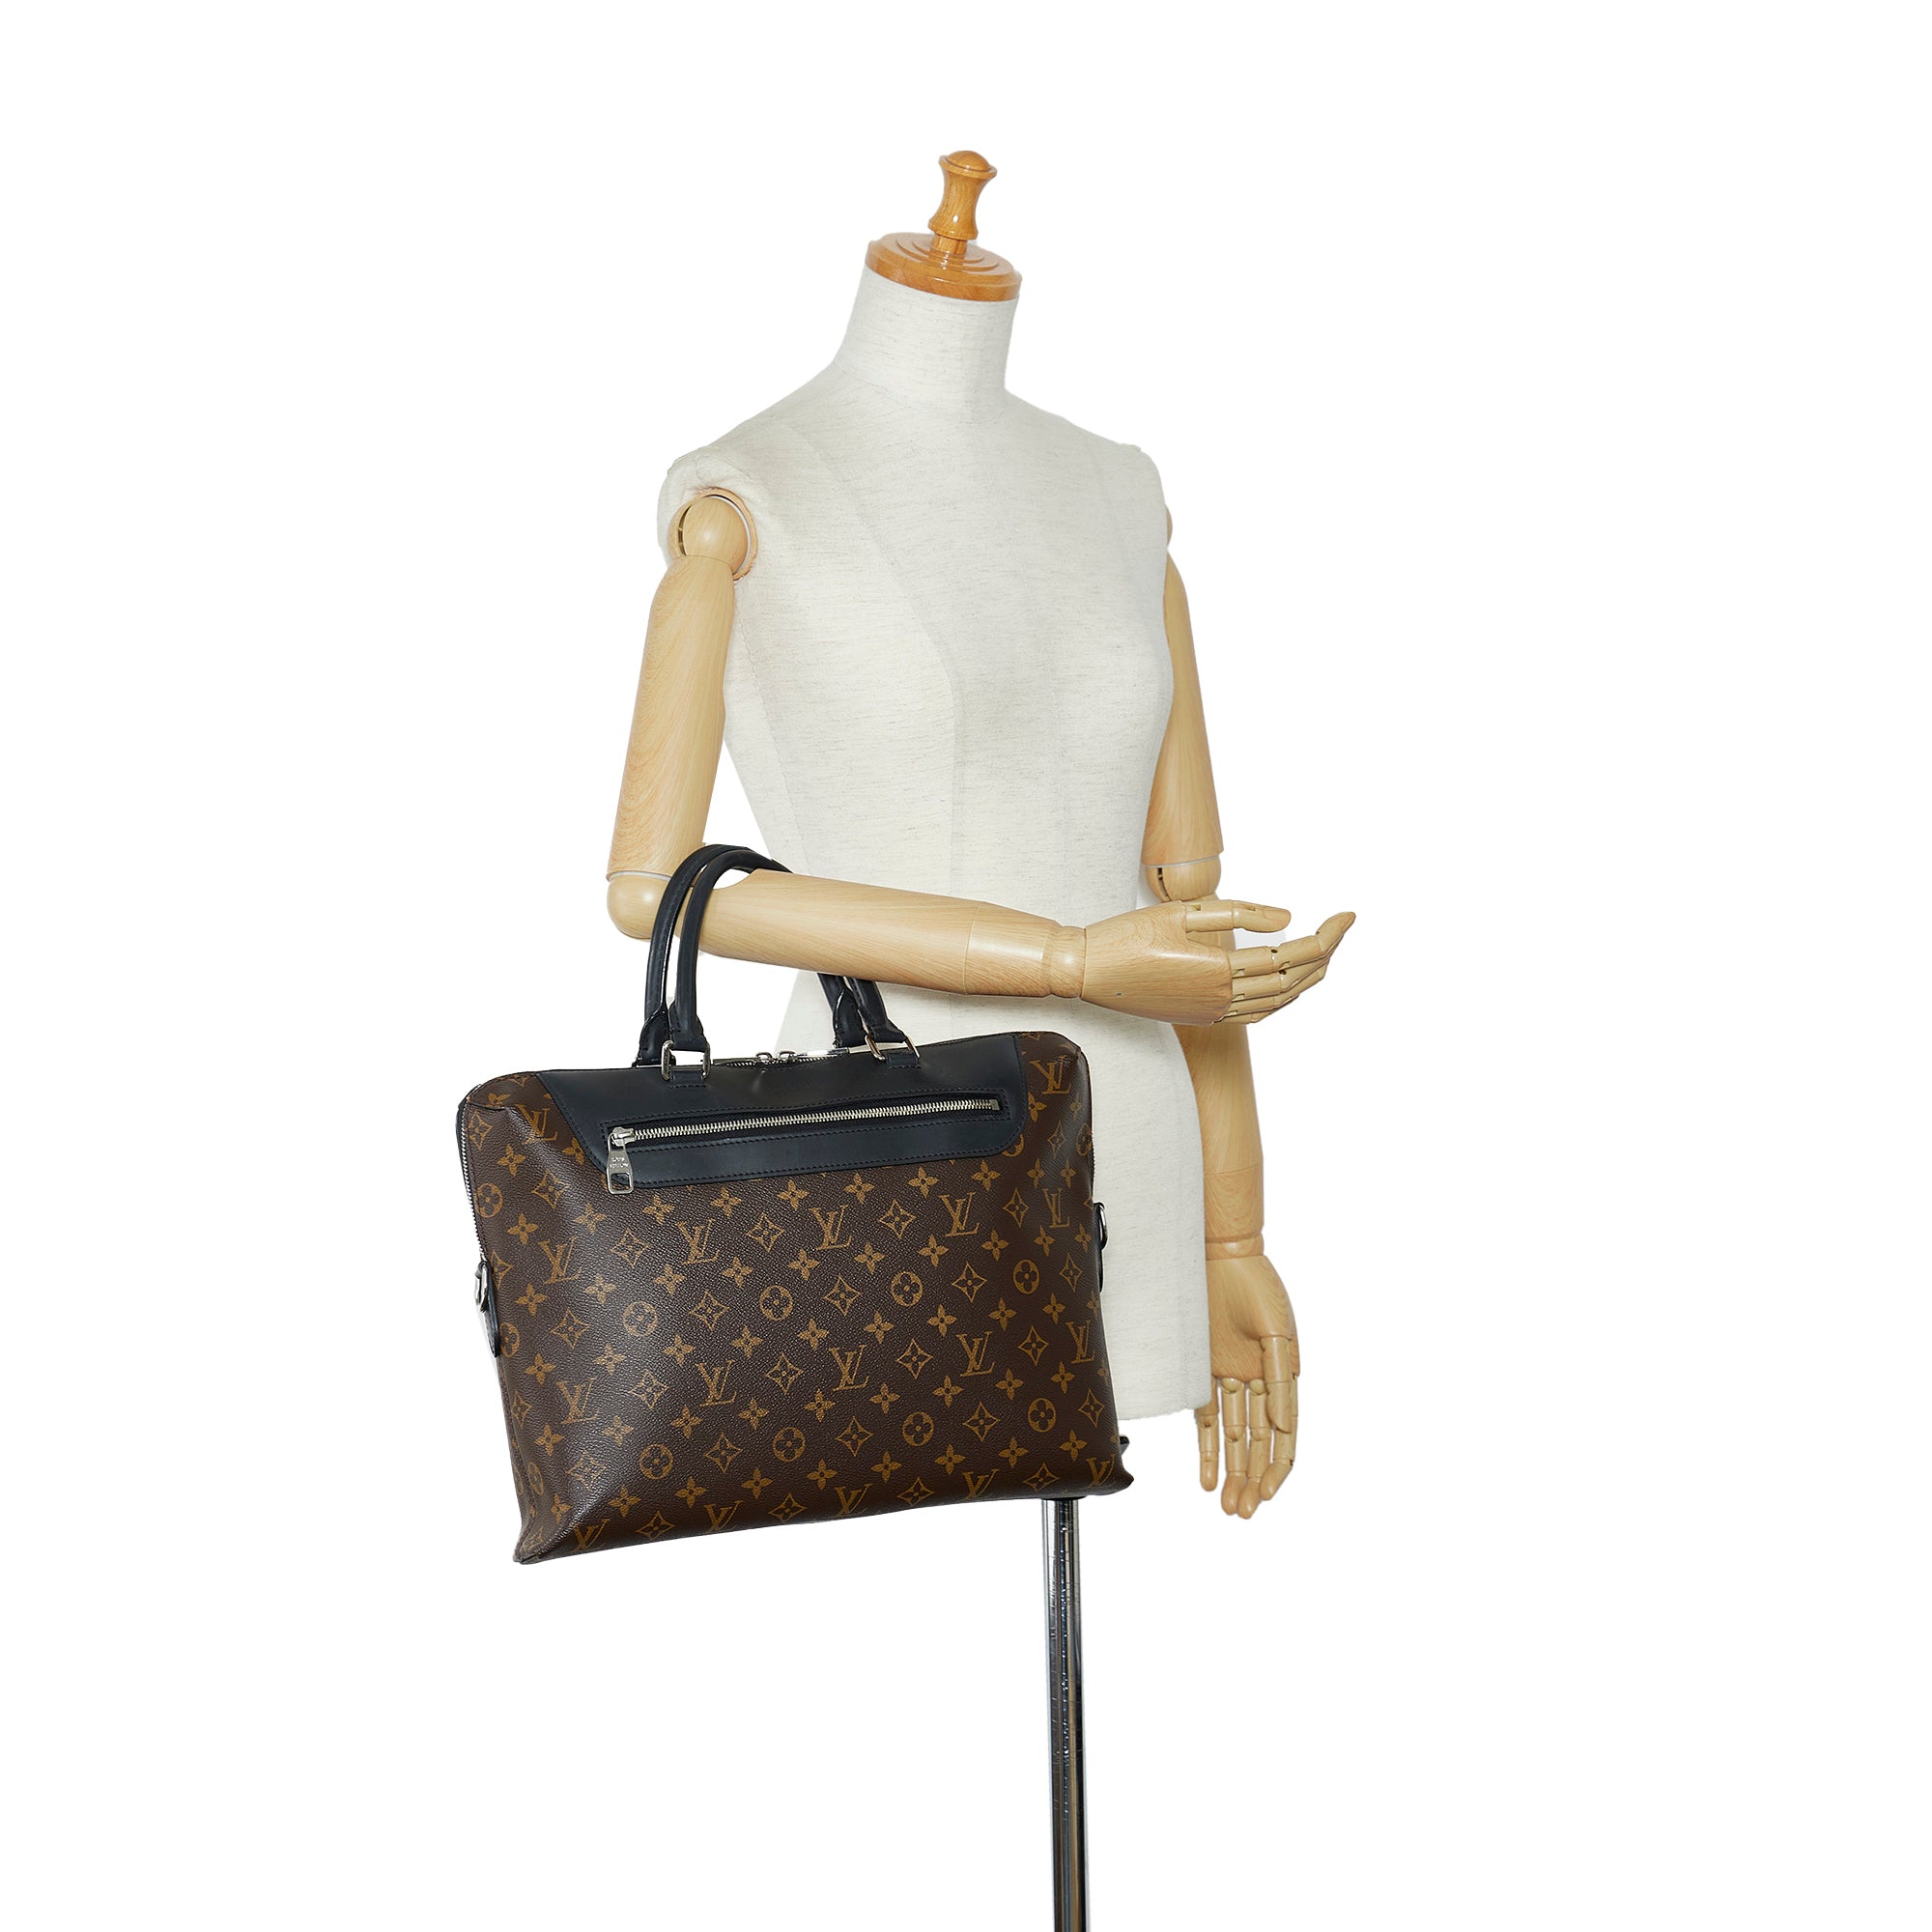 Louis Vuitton Porte-Documents Jour Porte Macassar Monogram Messenger Bag